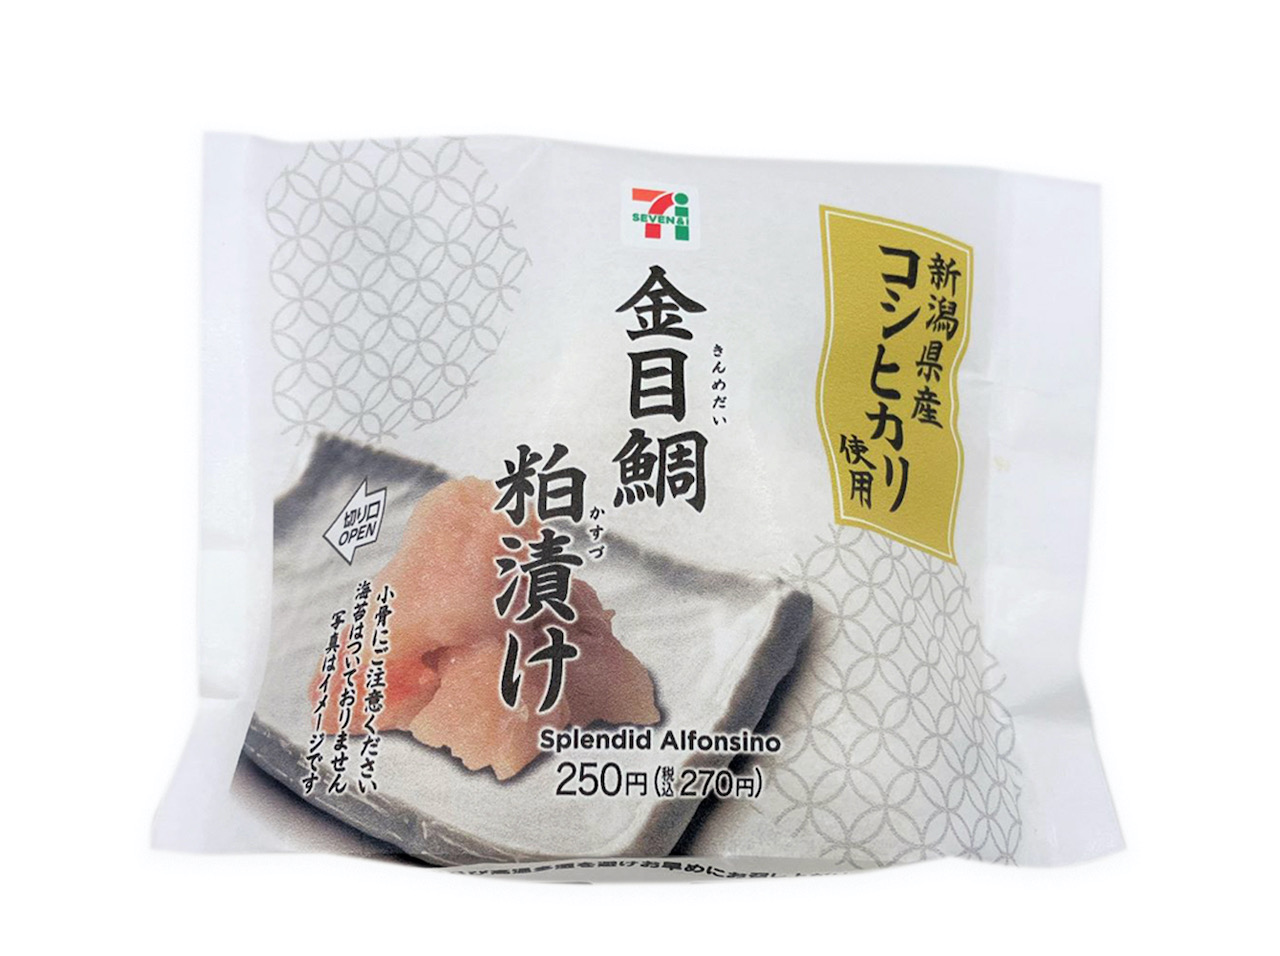 新潟県産コシヒカリを使用したおむすびです。酒粕や白味噌で金目鯛を漬け込み後、焼くことで風味の良い上品な味わいとなっています。